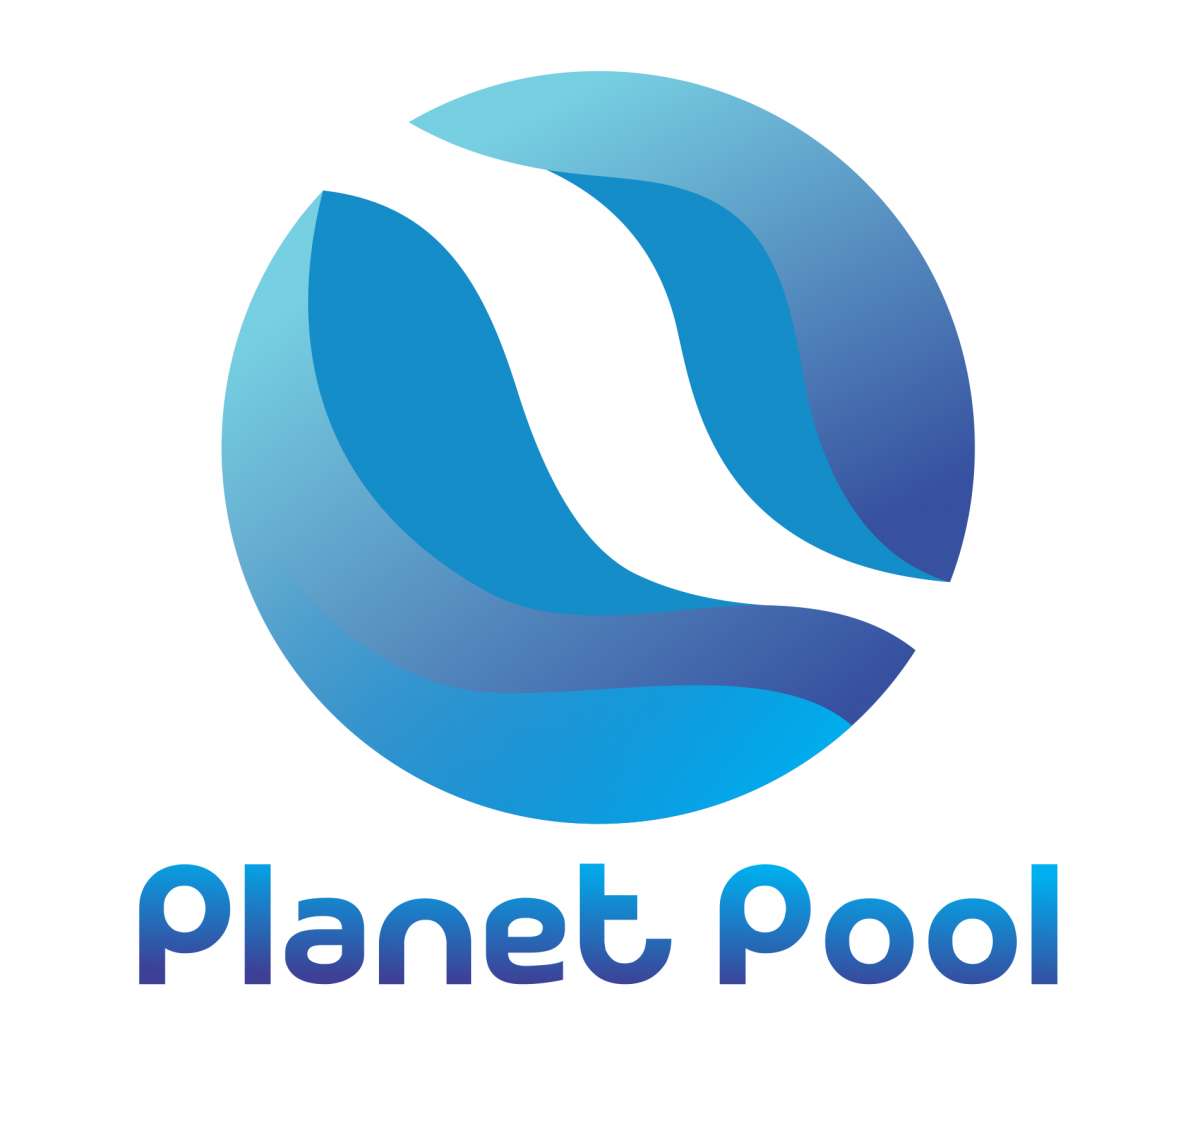 Planet Pool - Almada - Limpeza ou Manutenção de Piscina